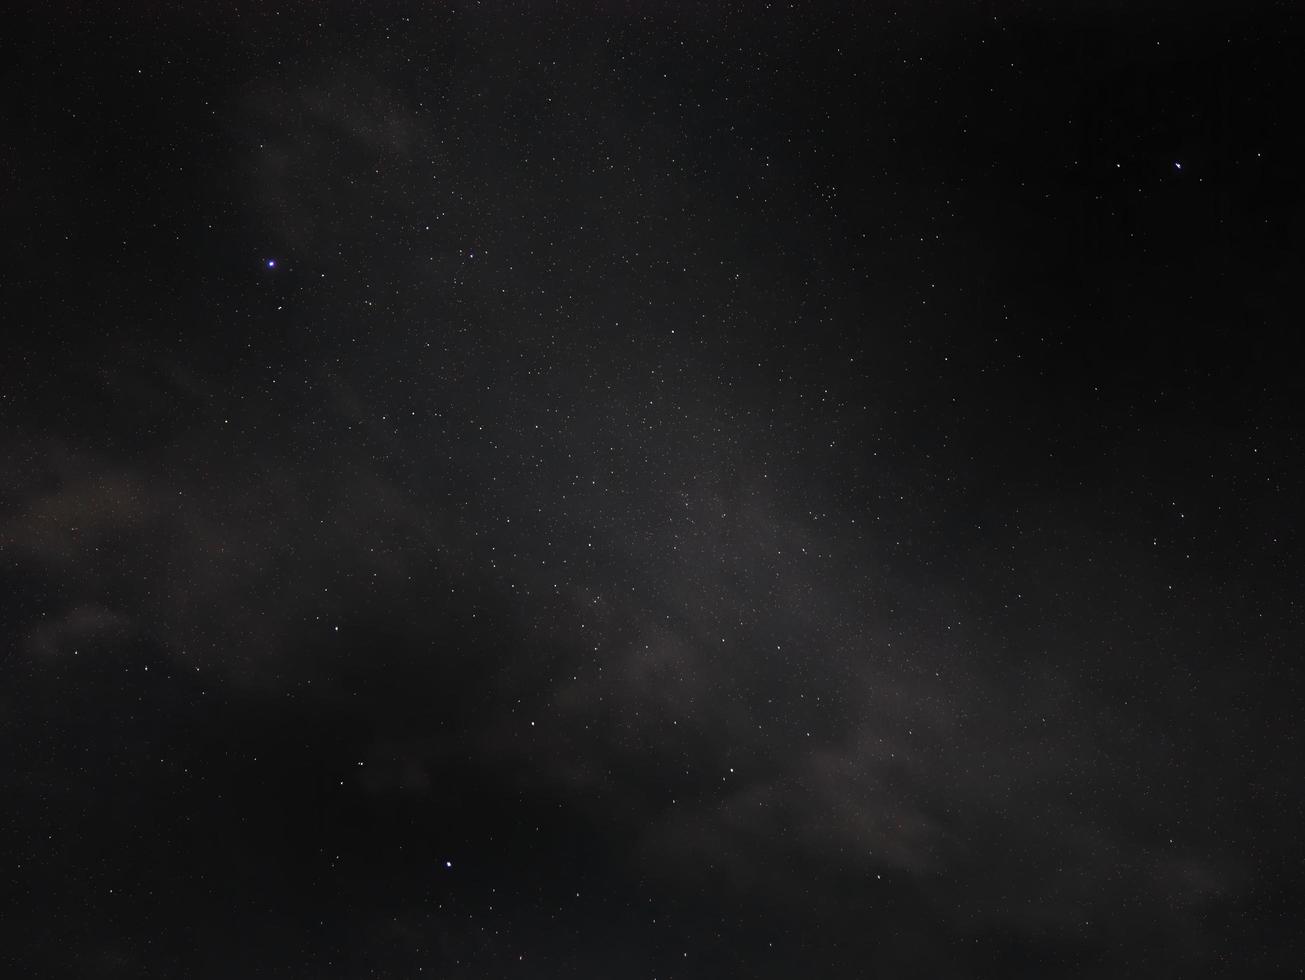 vue en angle bas du ciel étoilé nocturne et de la poussière spatiale dans l'univers, cosmos, arrière-plan sombre, photo nocturne de la constellation